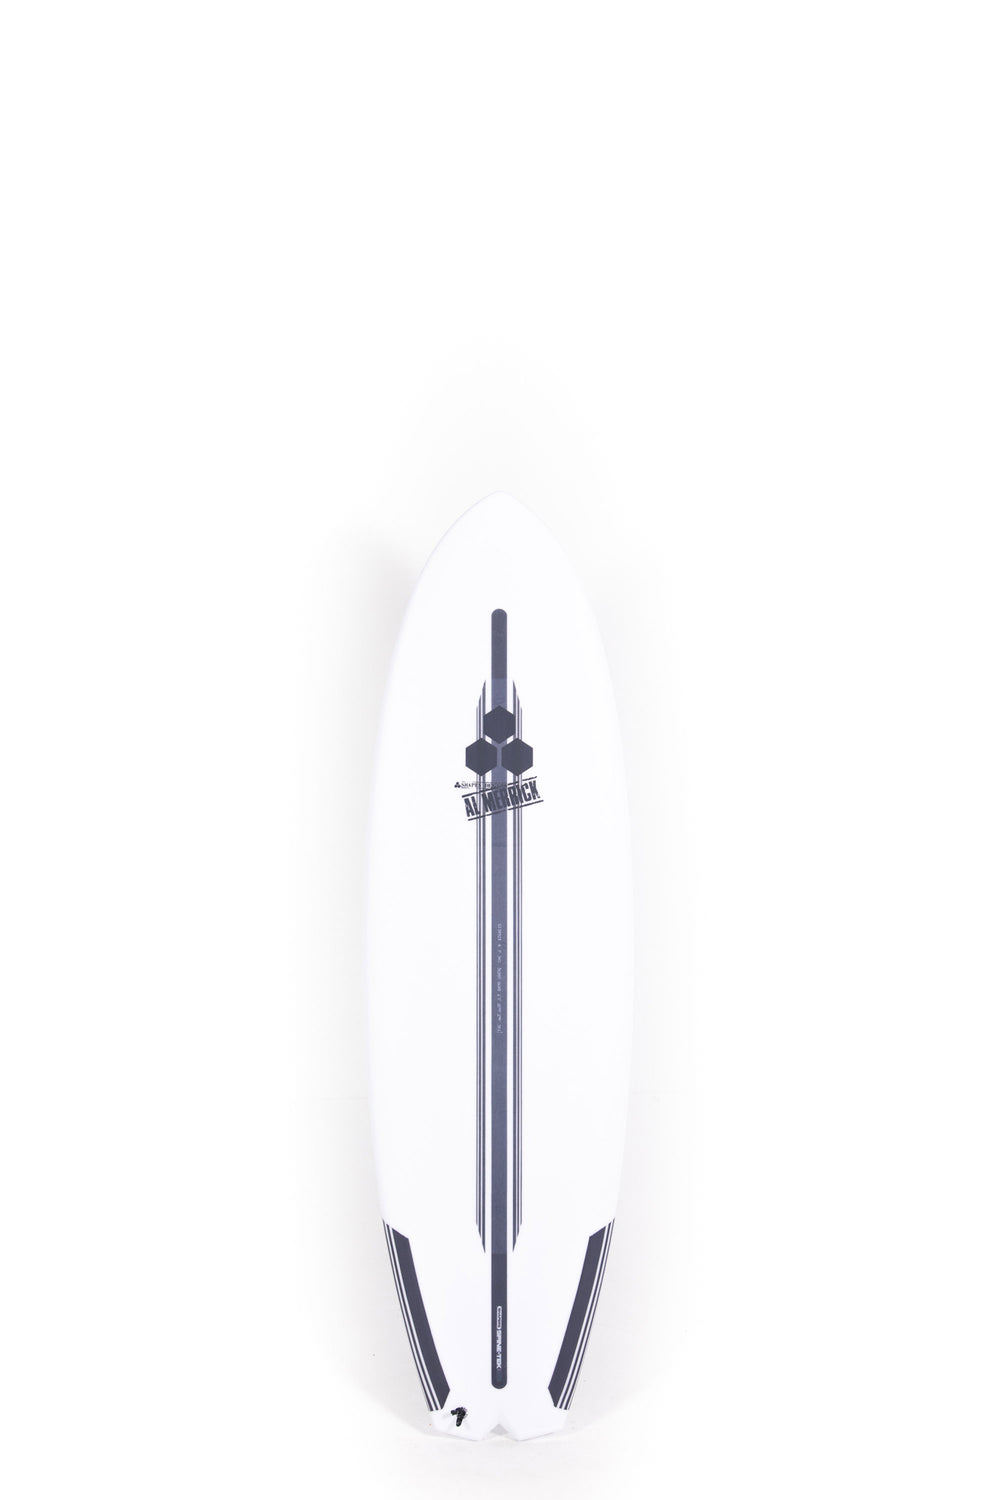 Pukas Surf Shop Channel Islands Surfboard Bobby Quad Spine Tek 6'0